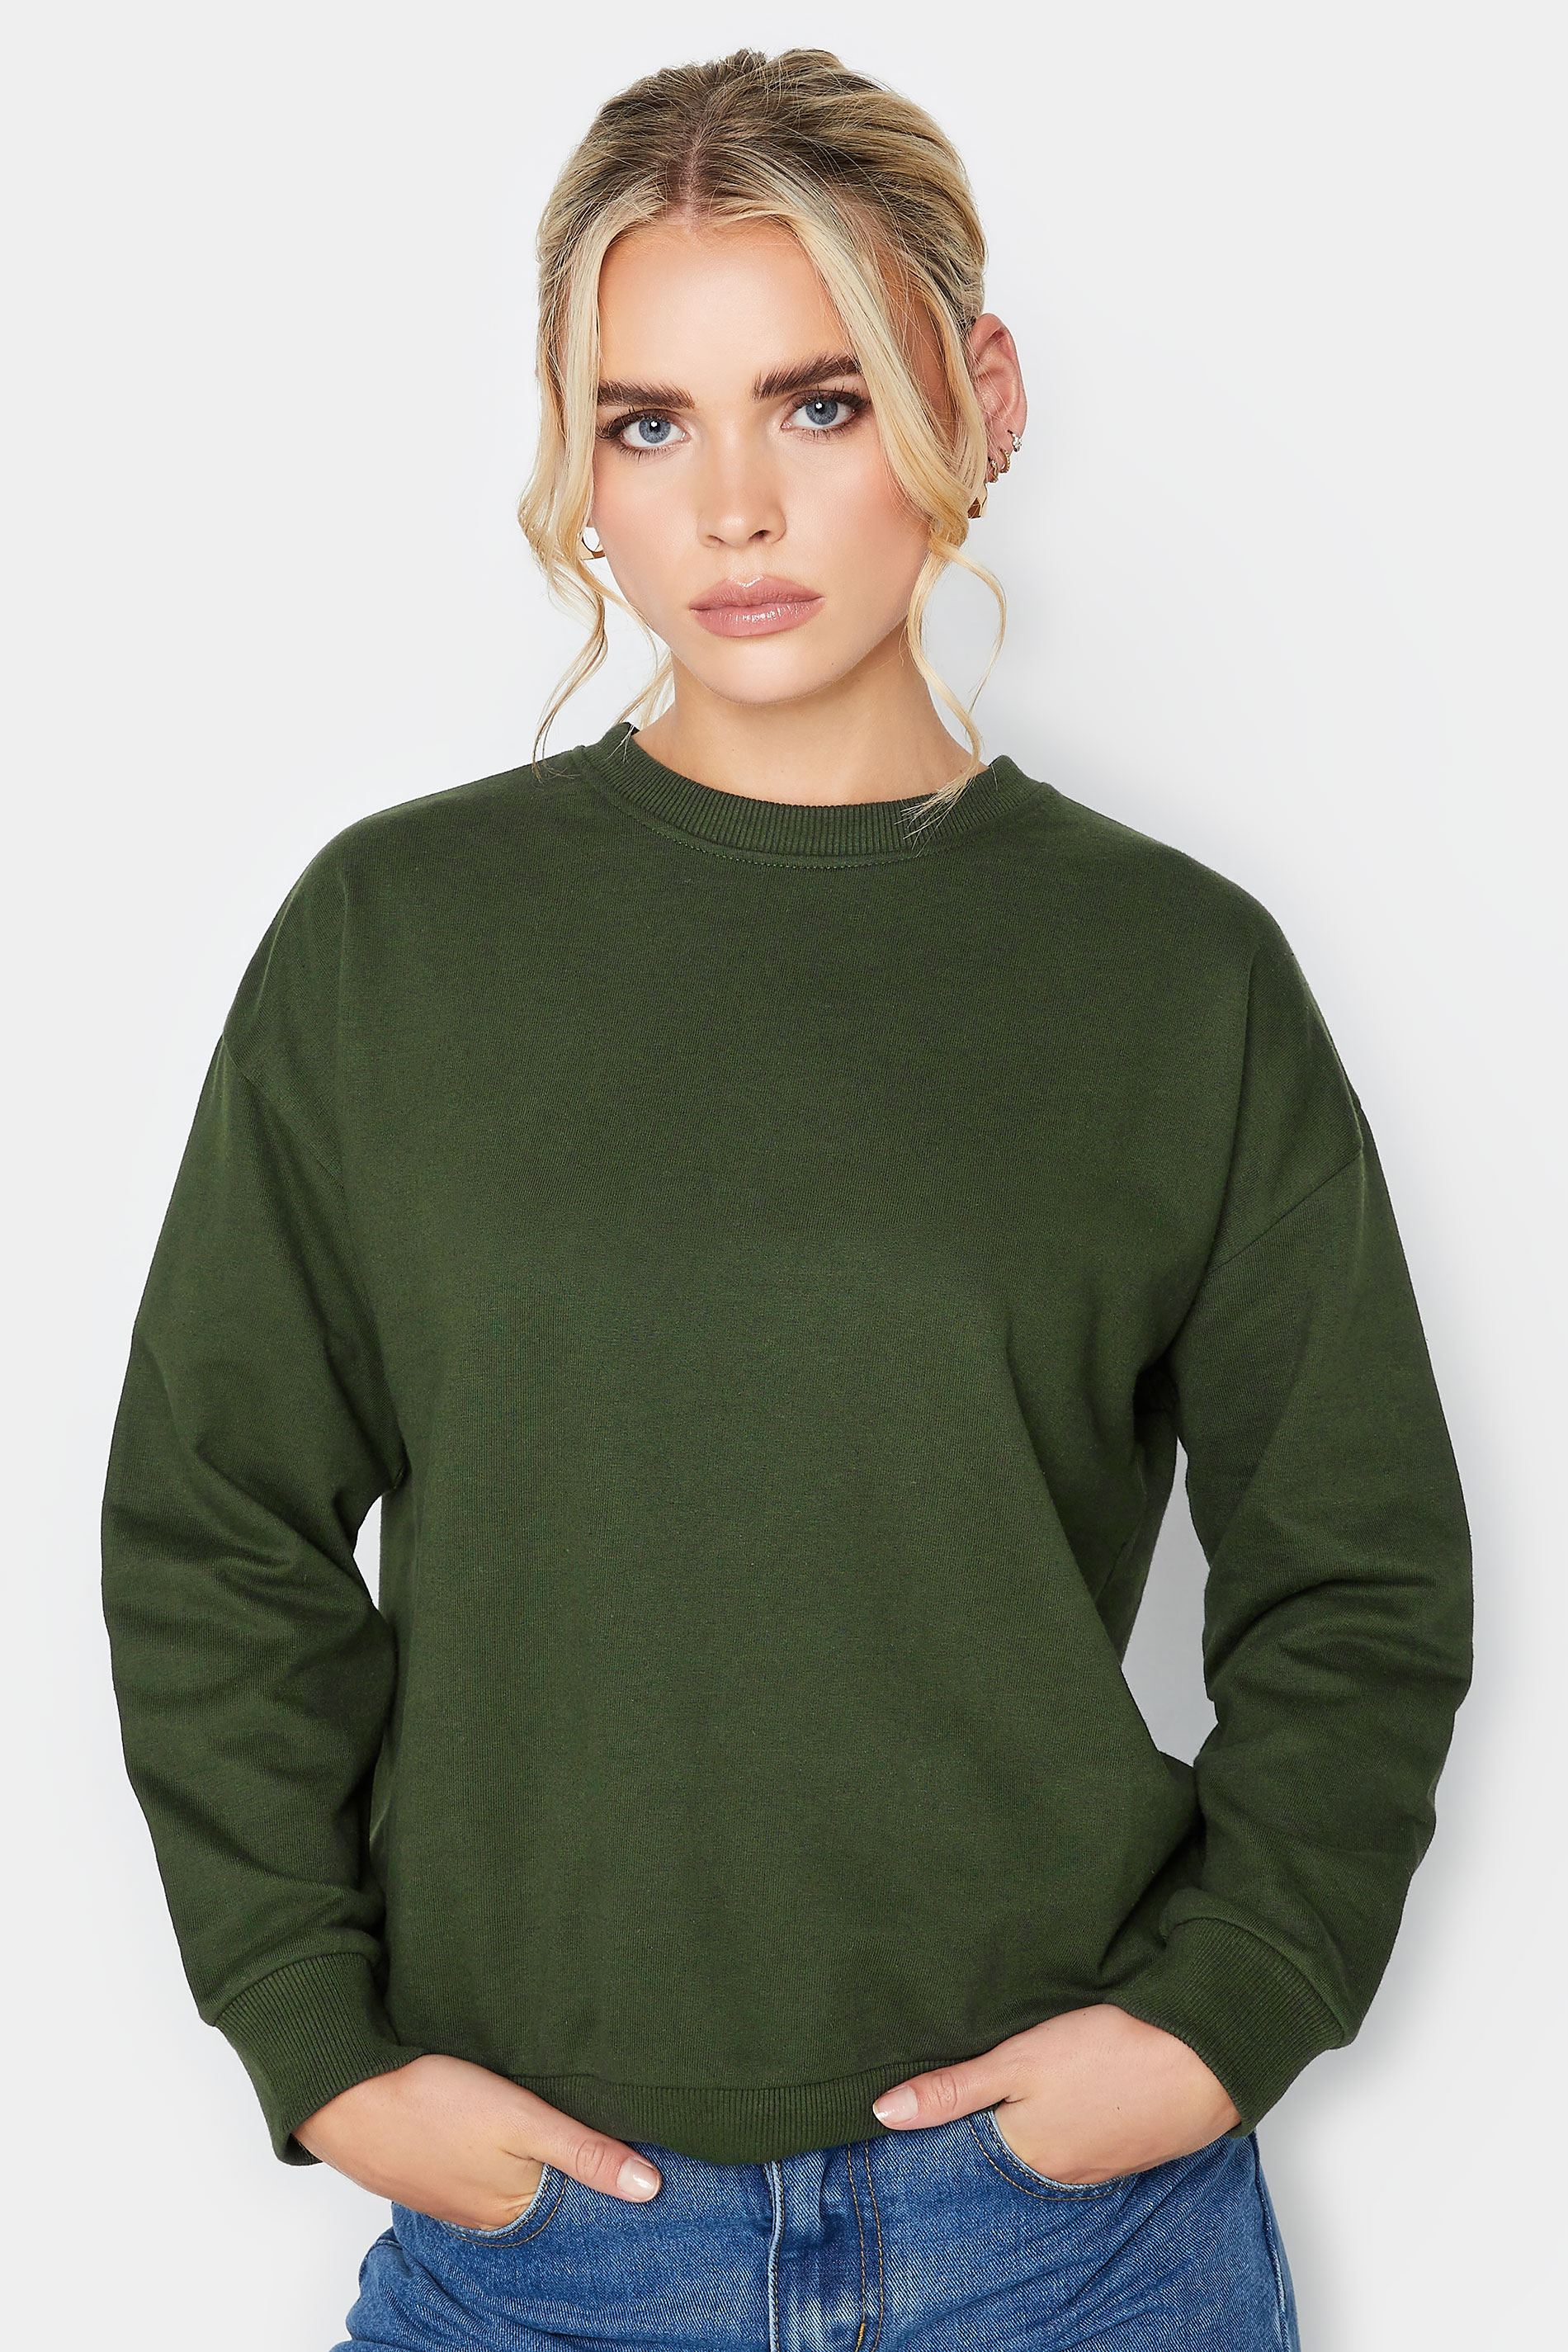 Pixiegirl Green Crew Neck Sweatshirt 8 Pixiegirl | Petite Women's Long Sleeve Tops product